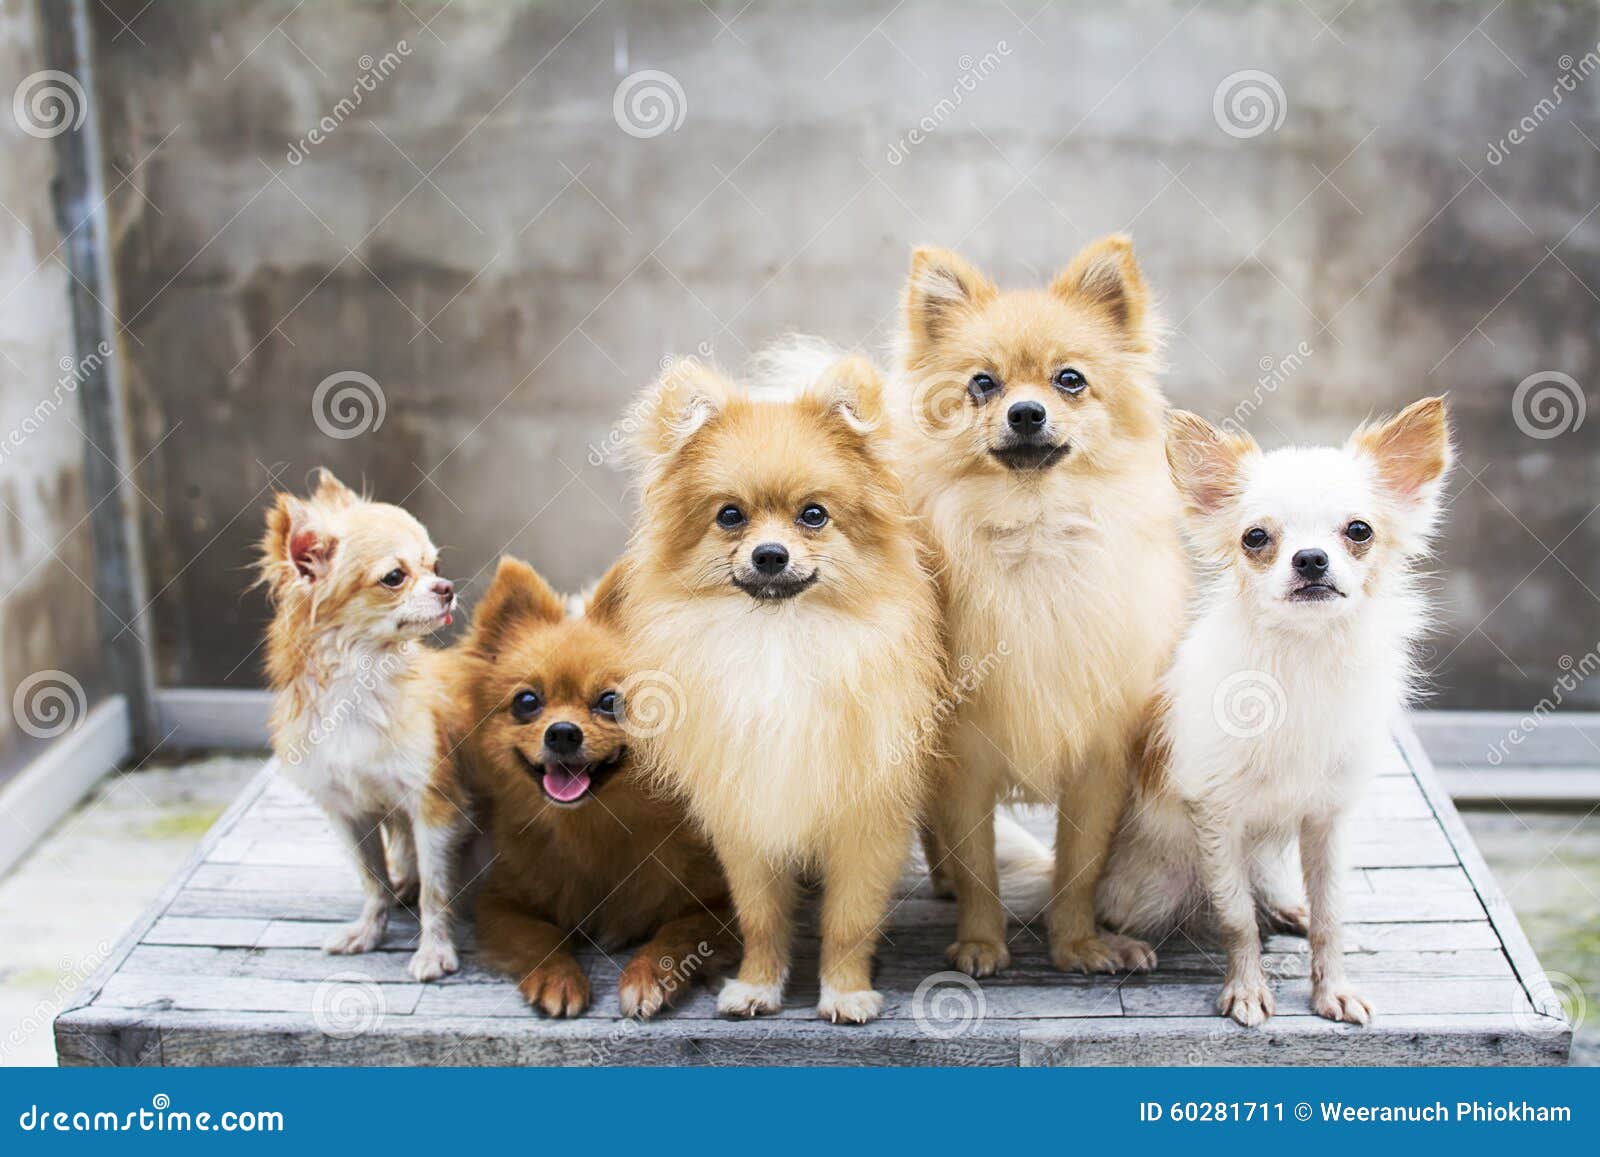 pomeranian dog family